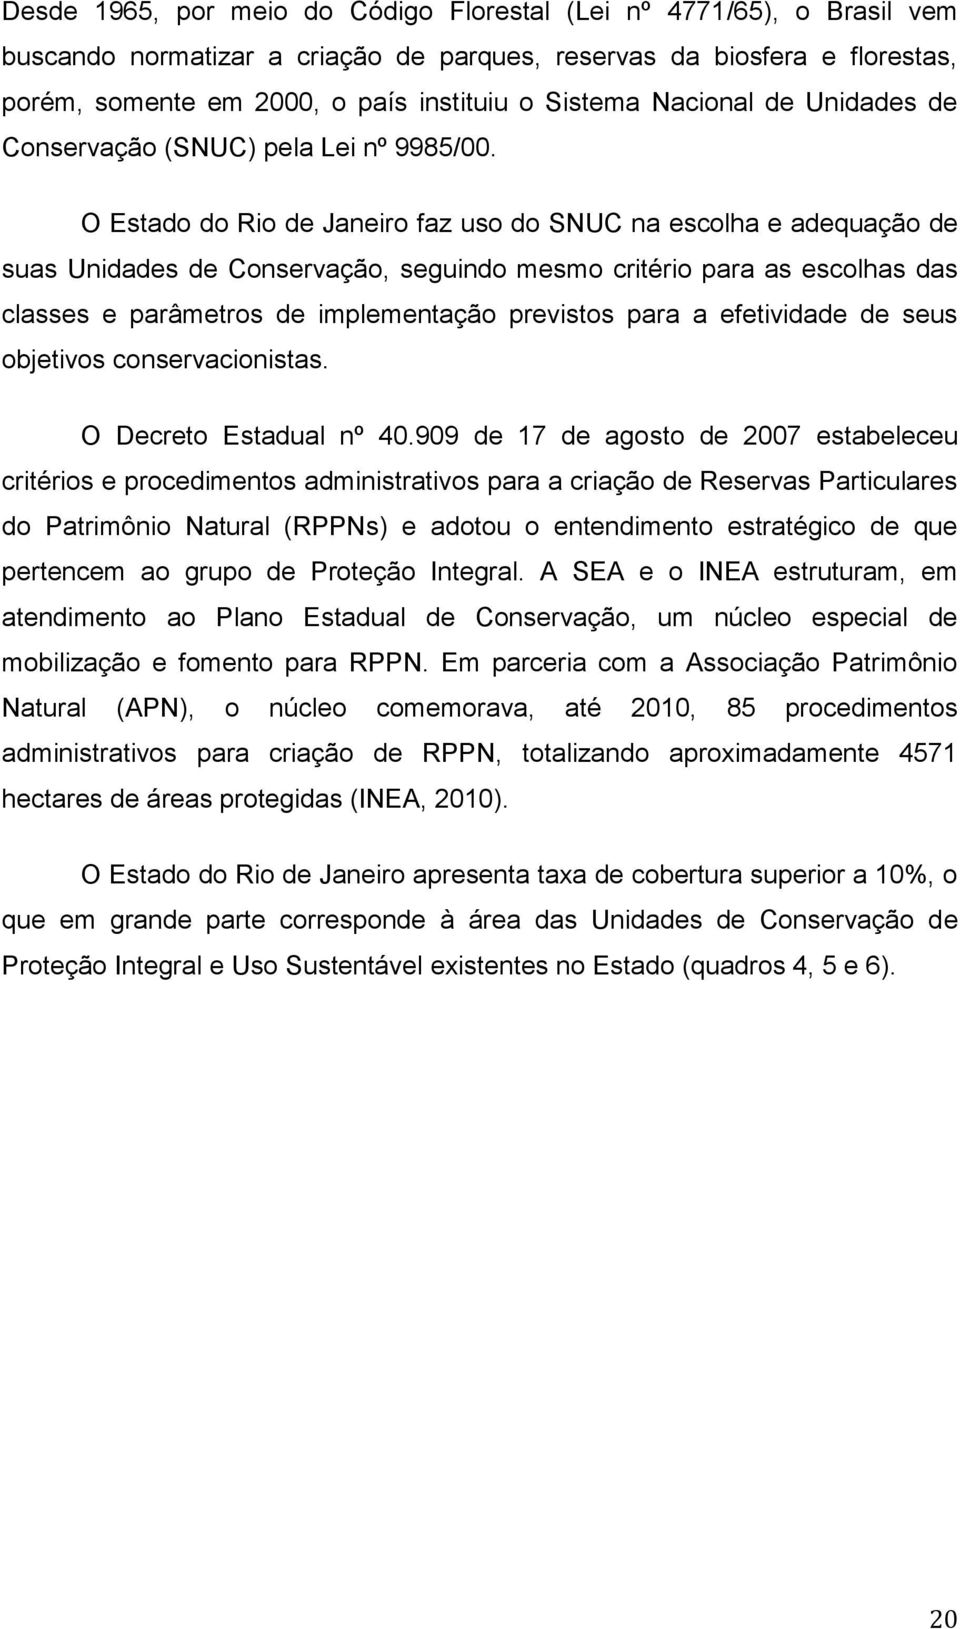 O Estado do Rio de Janeiro faz uso do SNUC na escolha e adequação de suas Unidades de Conservação, seguindo mesmo critério para as escolhas das classes e parâmetros de implementação previstos para a